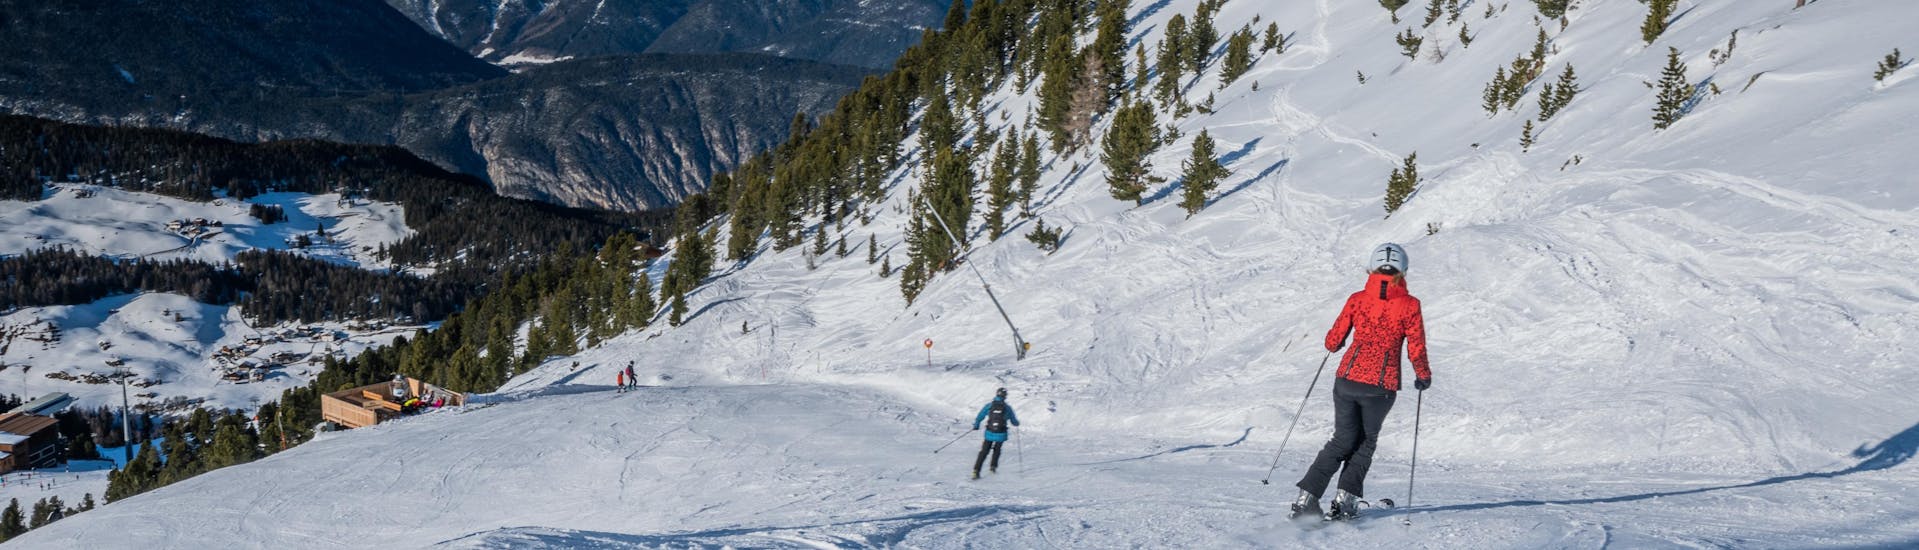 Ausblick auf die sonnige Berglandschaft beim Skifahren lernen mit den Skischulen in Oetz-Hochoetz.